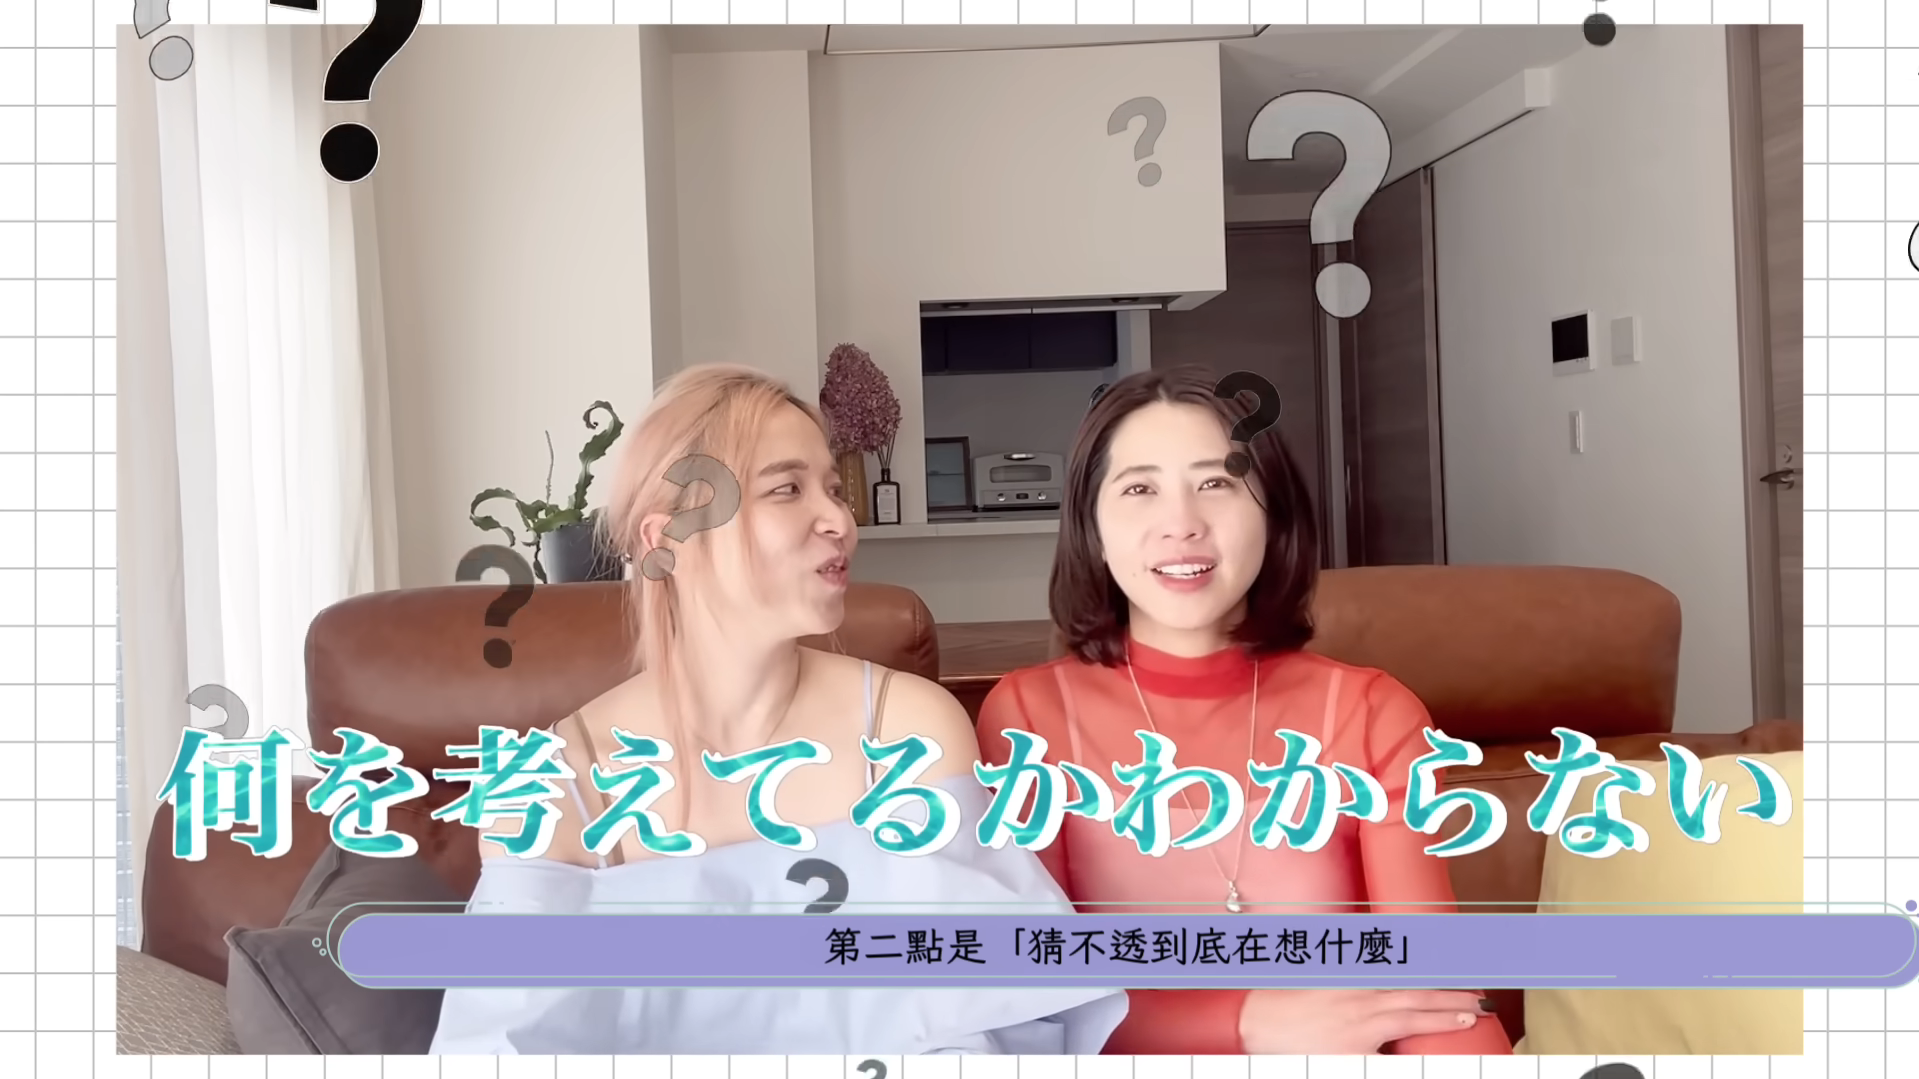 旅居YouTuber AMI與LEE 聊全世界都反感的日本人行為引共鳴